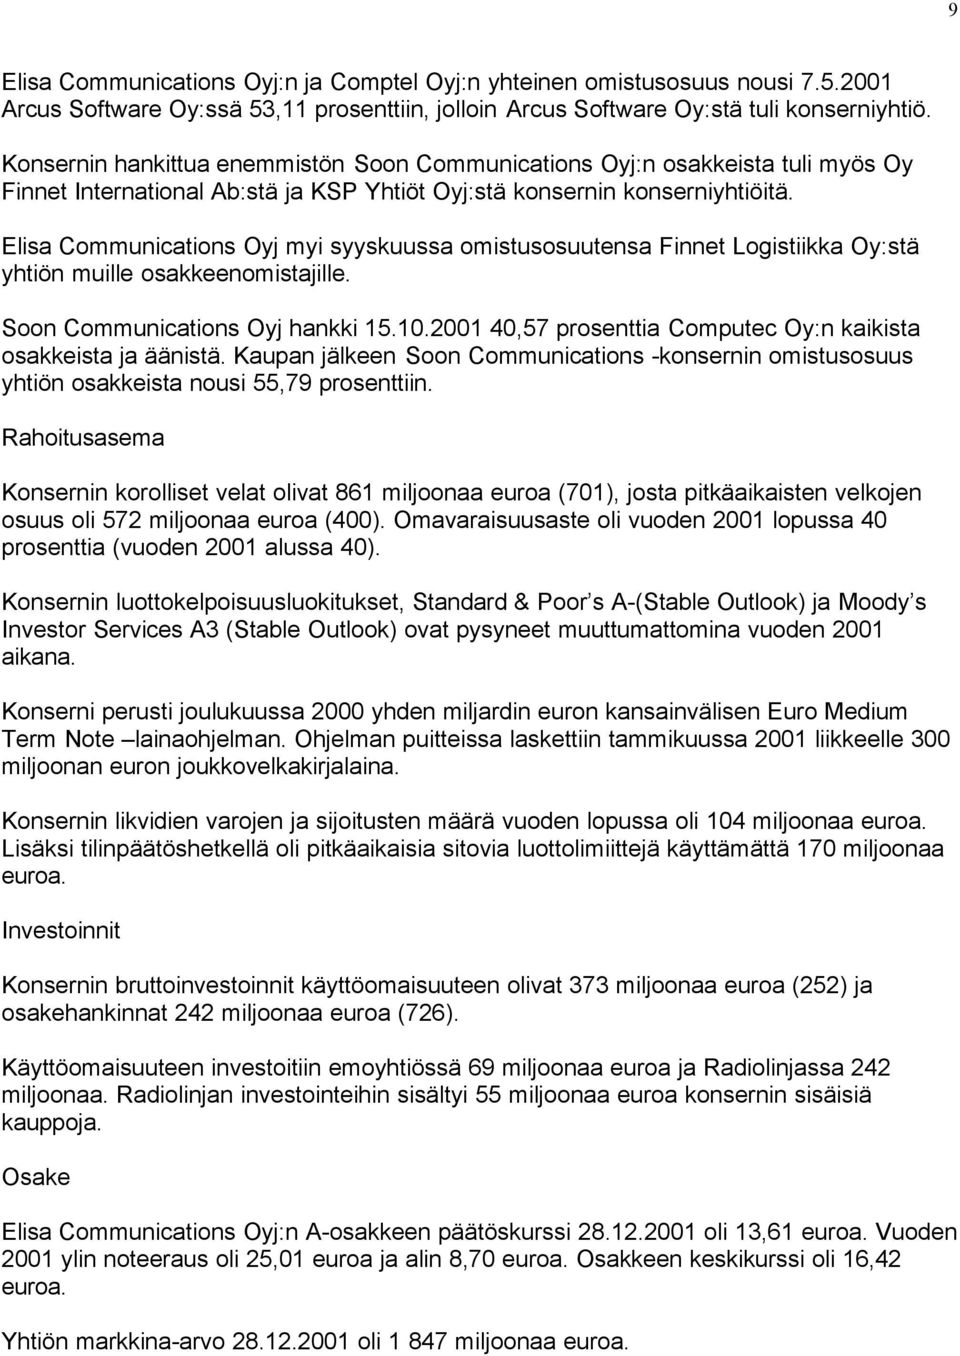 Elisa Communications Oyj myi syyskuussa omistusosuutensa Finnet Logistiikka Oy:stä yhtiön muille osakkeenomistajille. Soon Communications Oyj hankki 15.10.